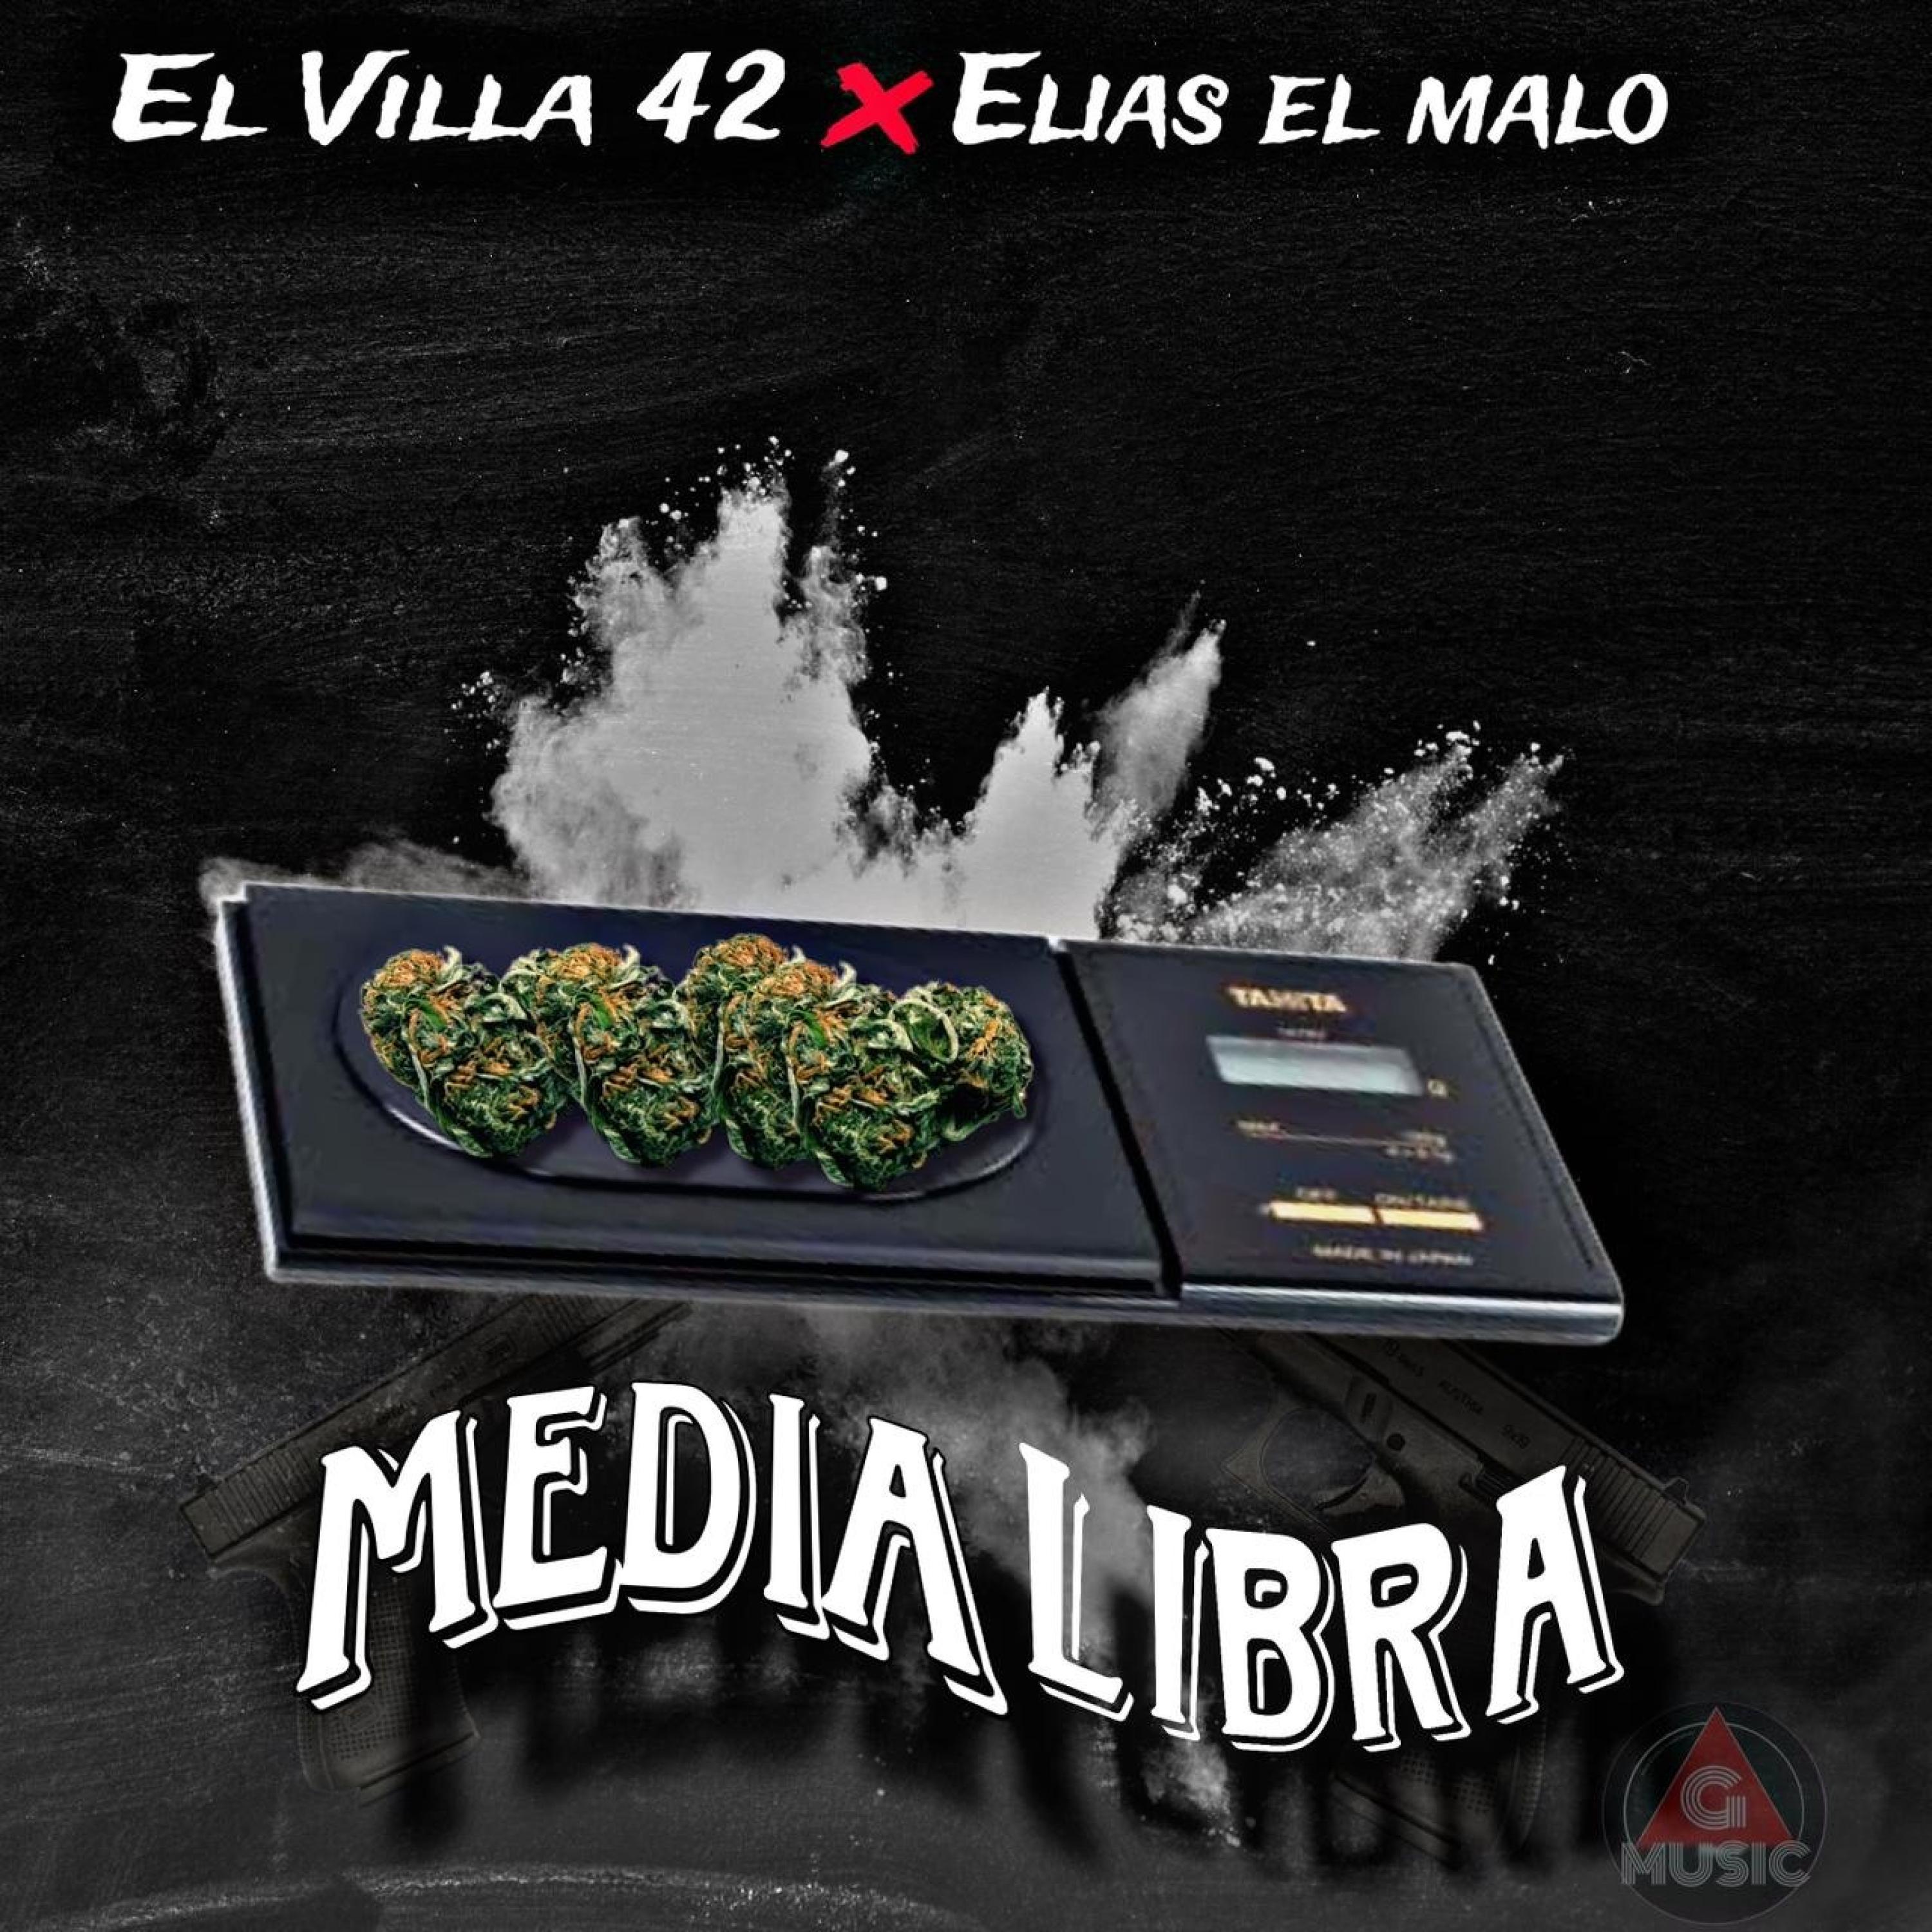 El Villa42 - MEDIA LIBRA (feat. ELIAS EL MALO)